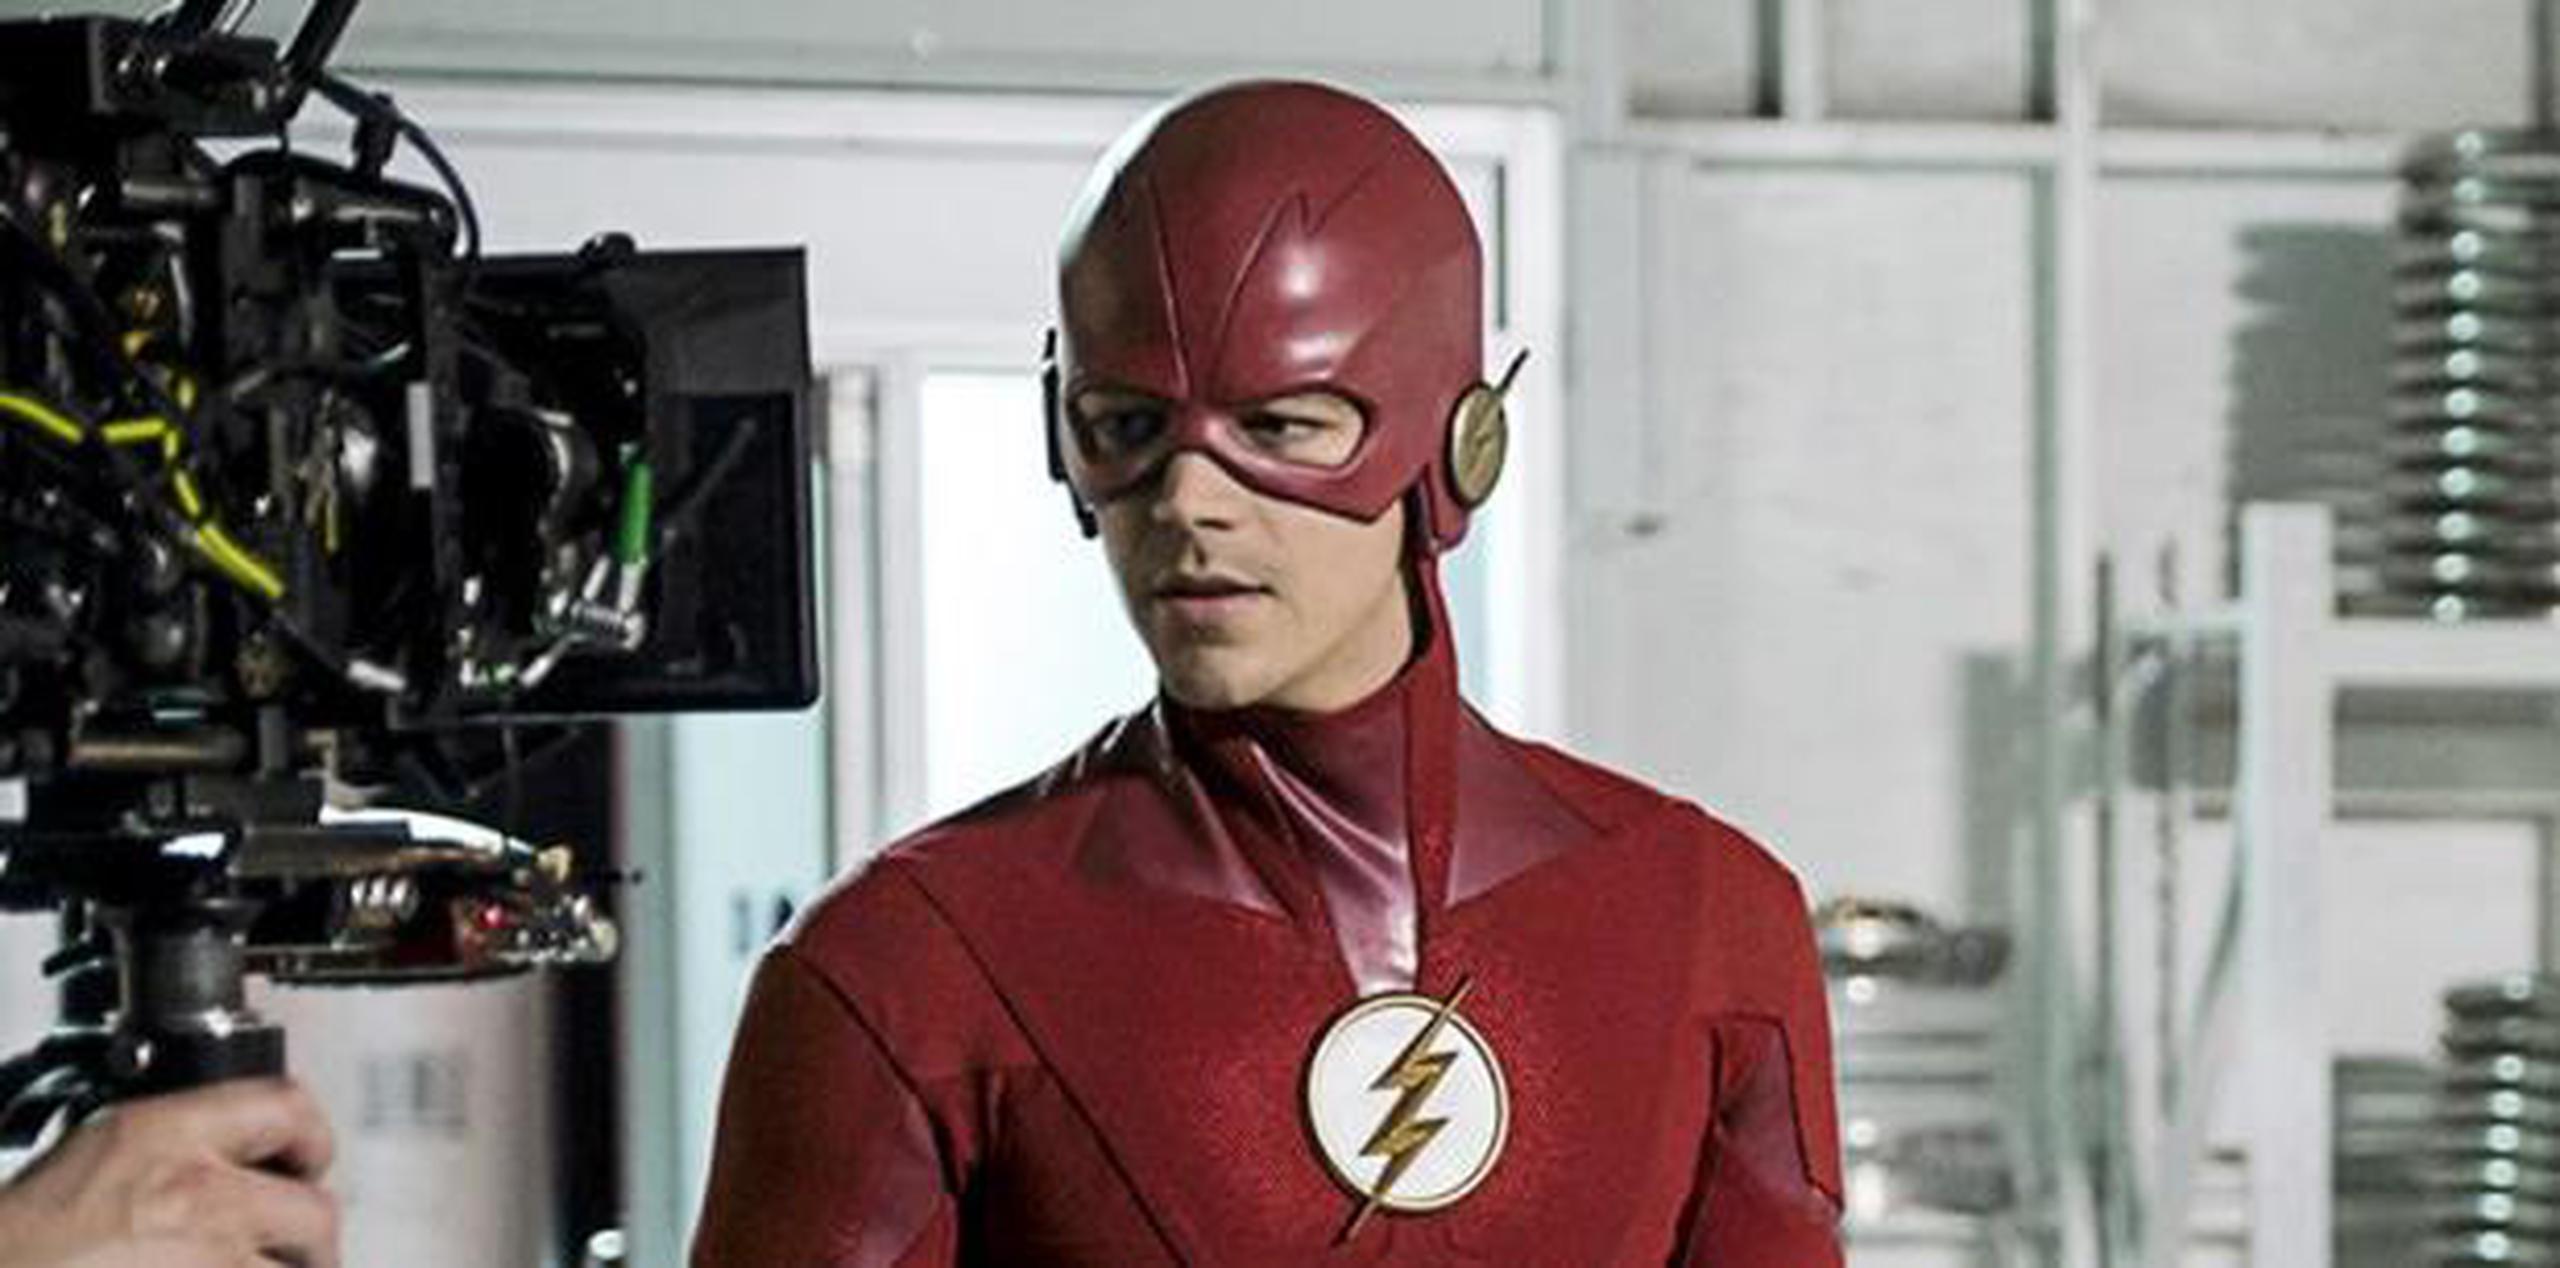 El tráiler oficial de la sexta temporada de “The Flash” se publicará el sábado 20 de julio durante la Comic Con de San Diego 2019. (Facebook)